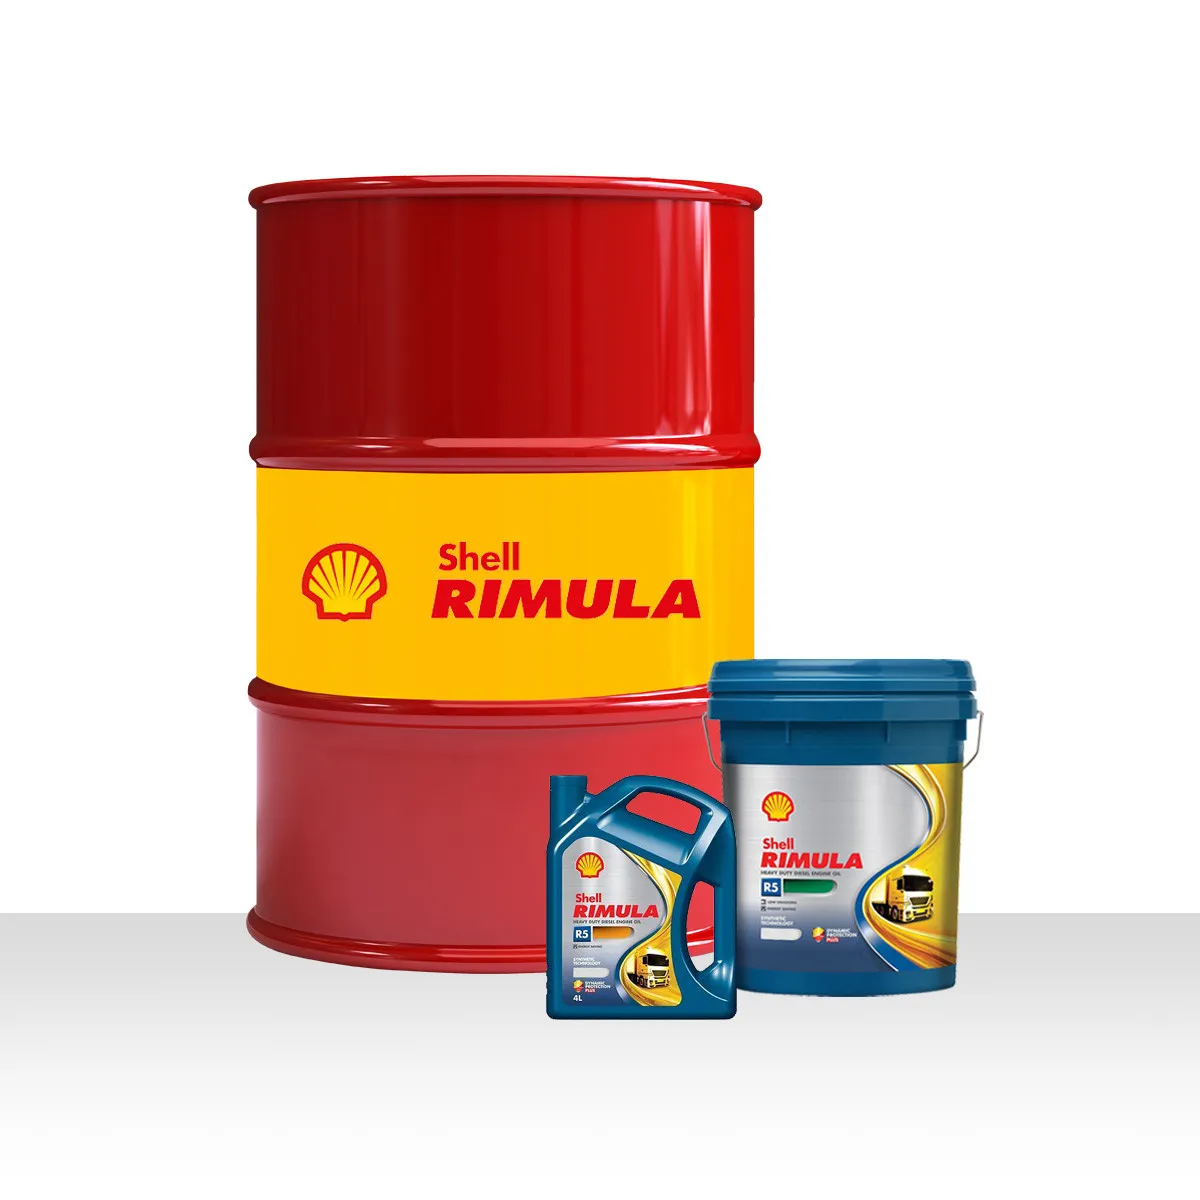 Shell Rimula R5 LM 10W-40, dizel dvigatellar uchun motor moylari#1